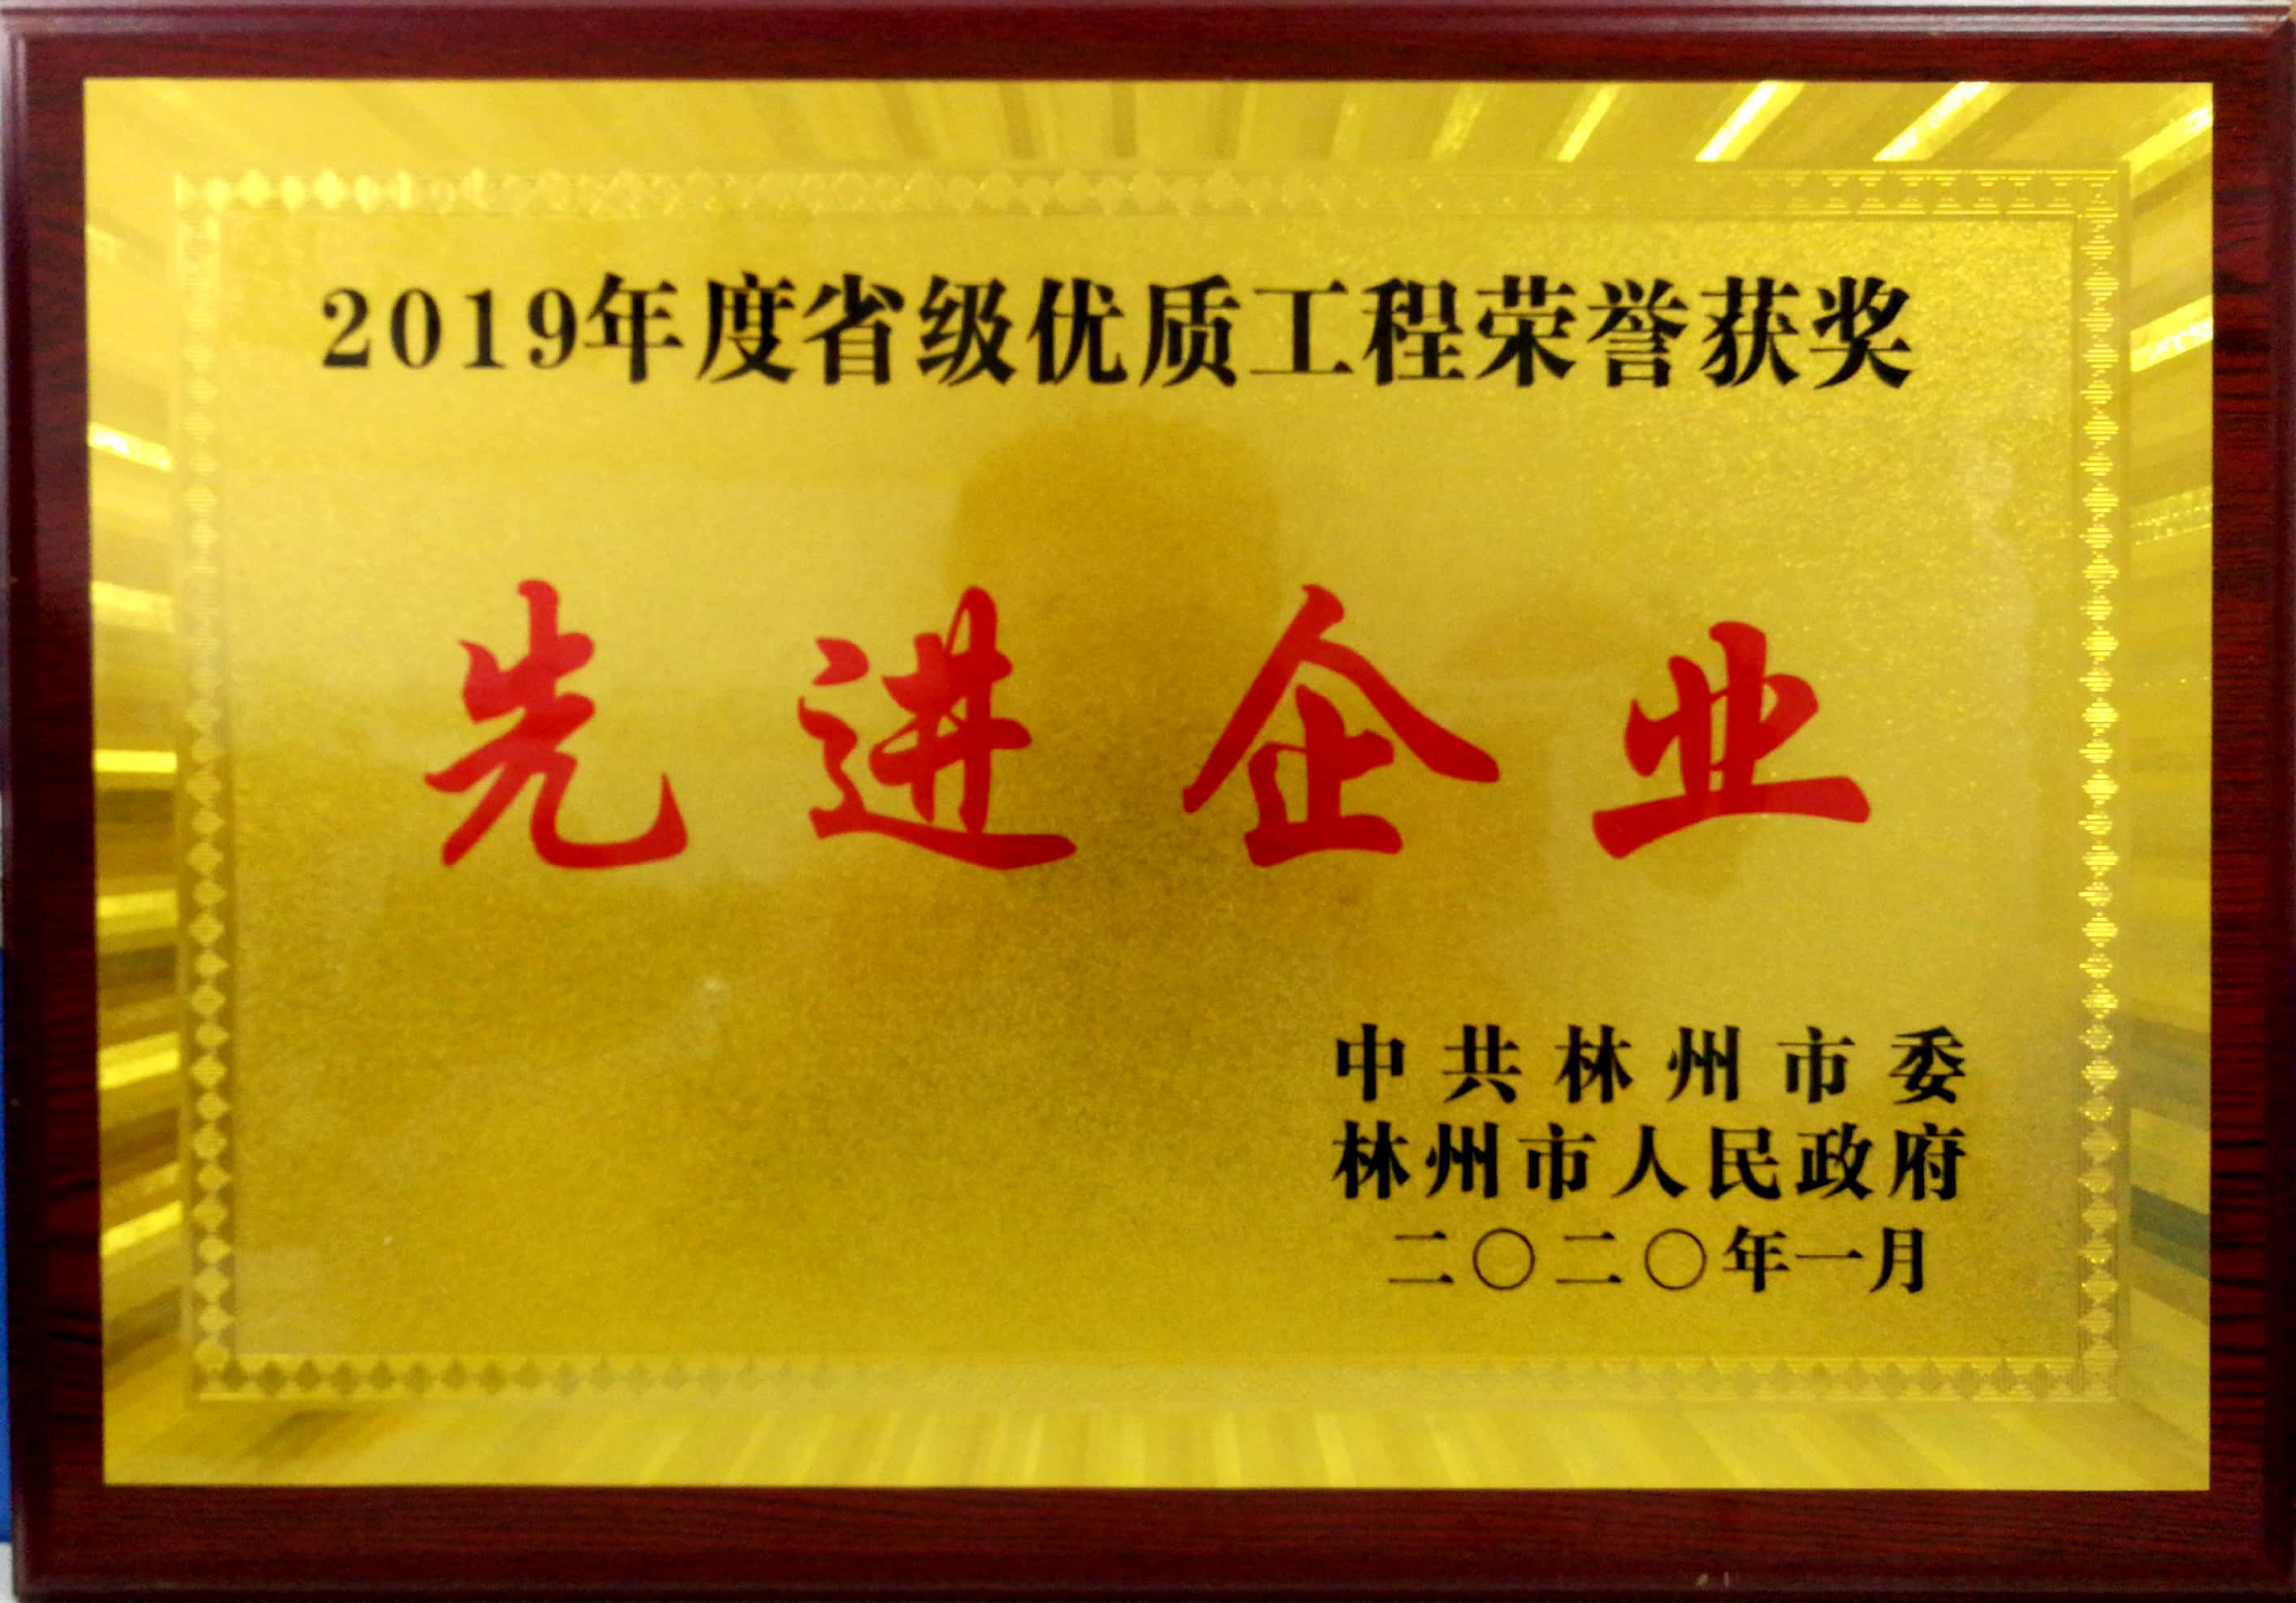 成兴公司荣获林州市“2019年省级优质工程荣誉获奖先进企业”